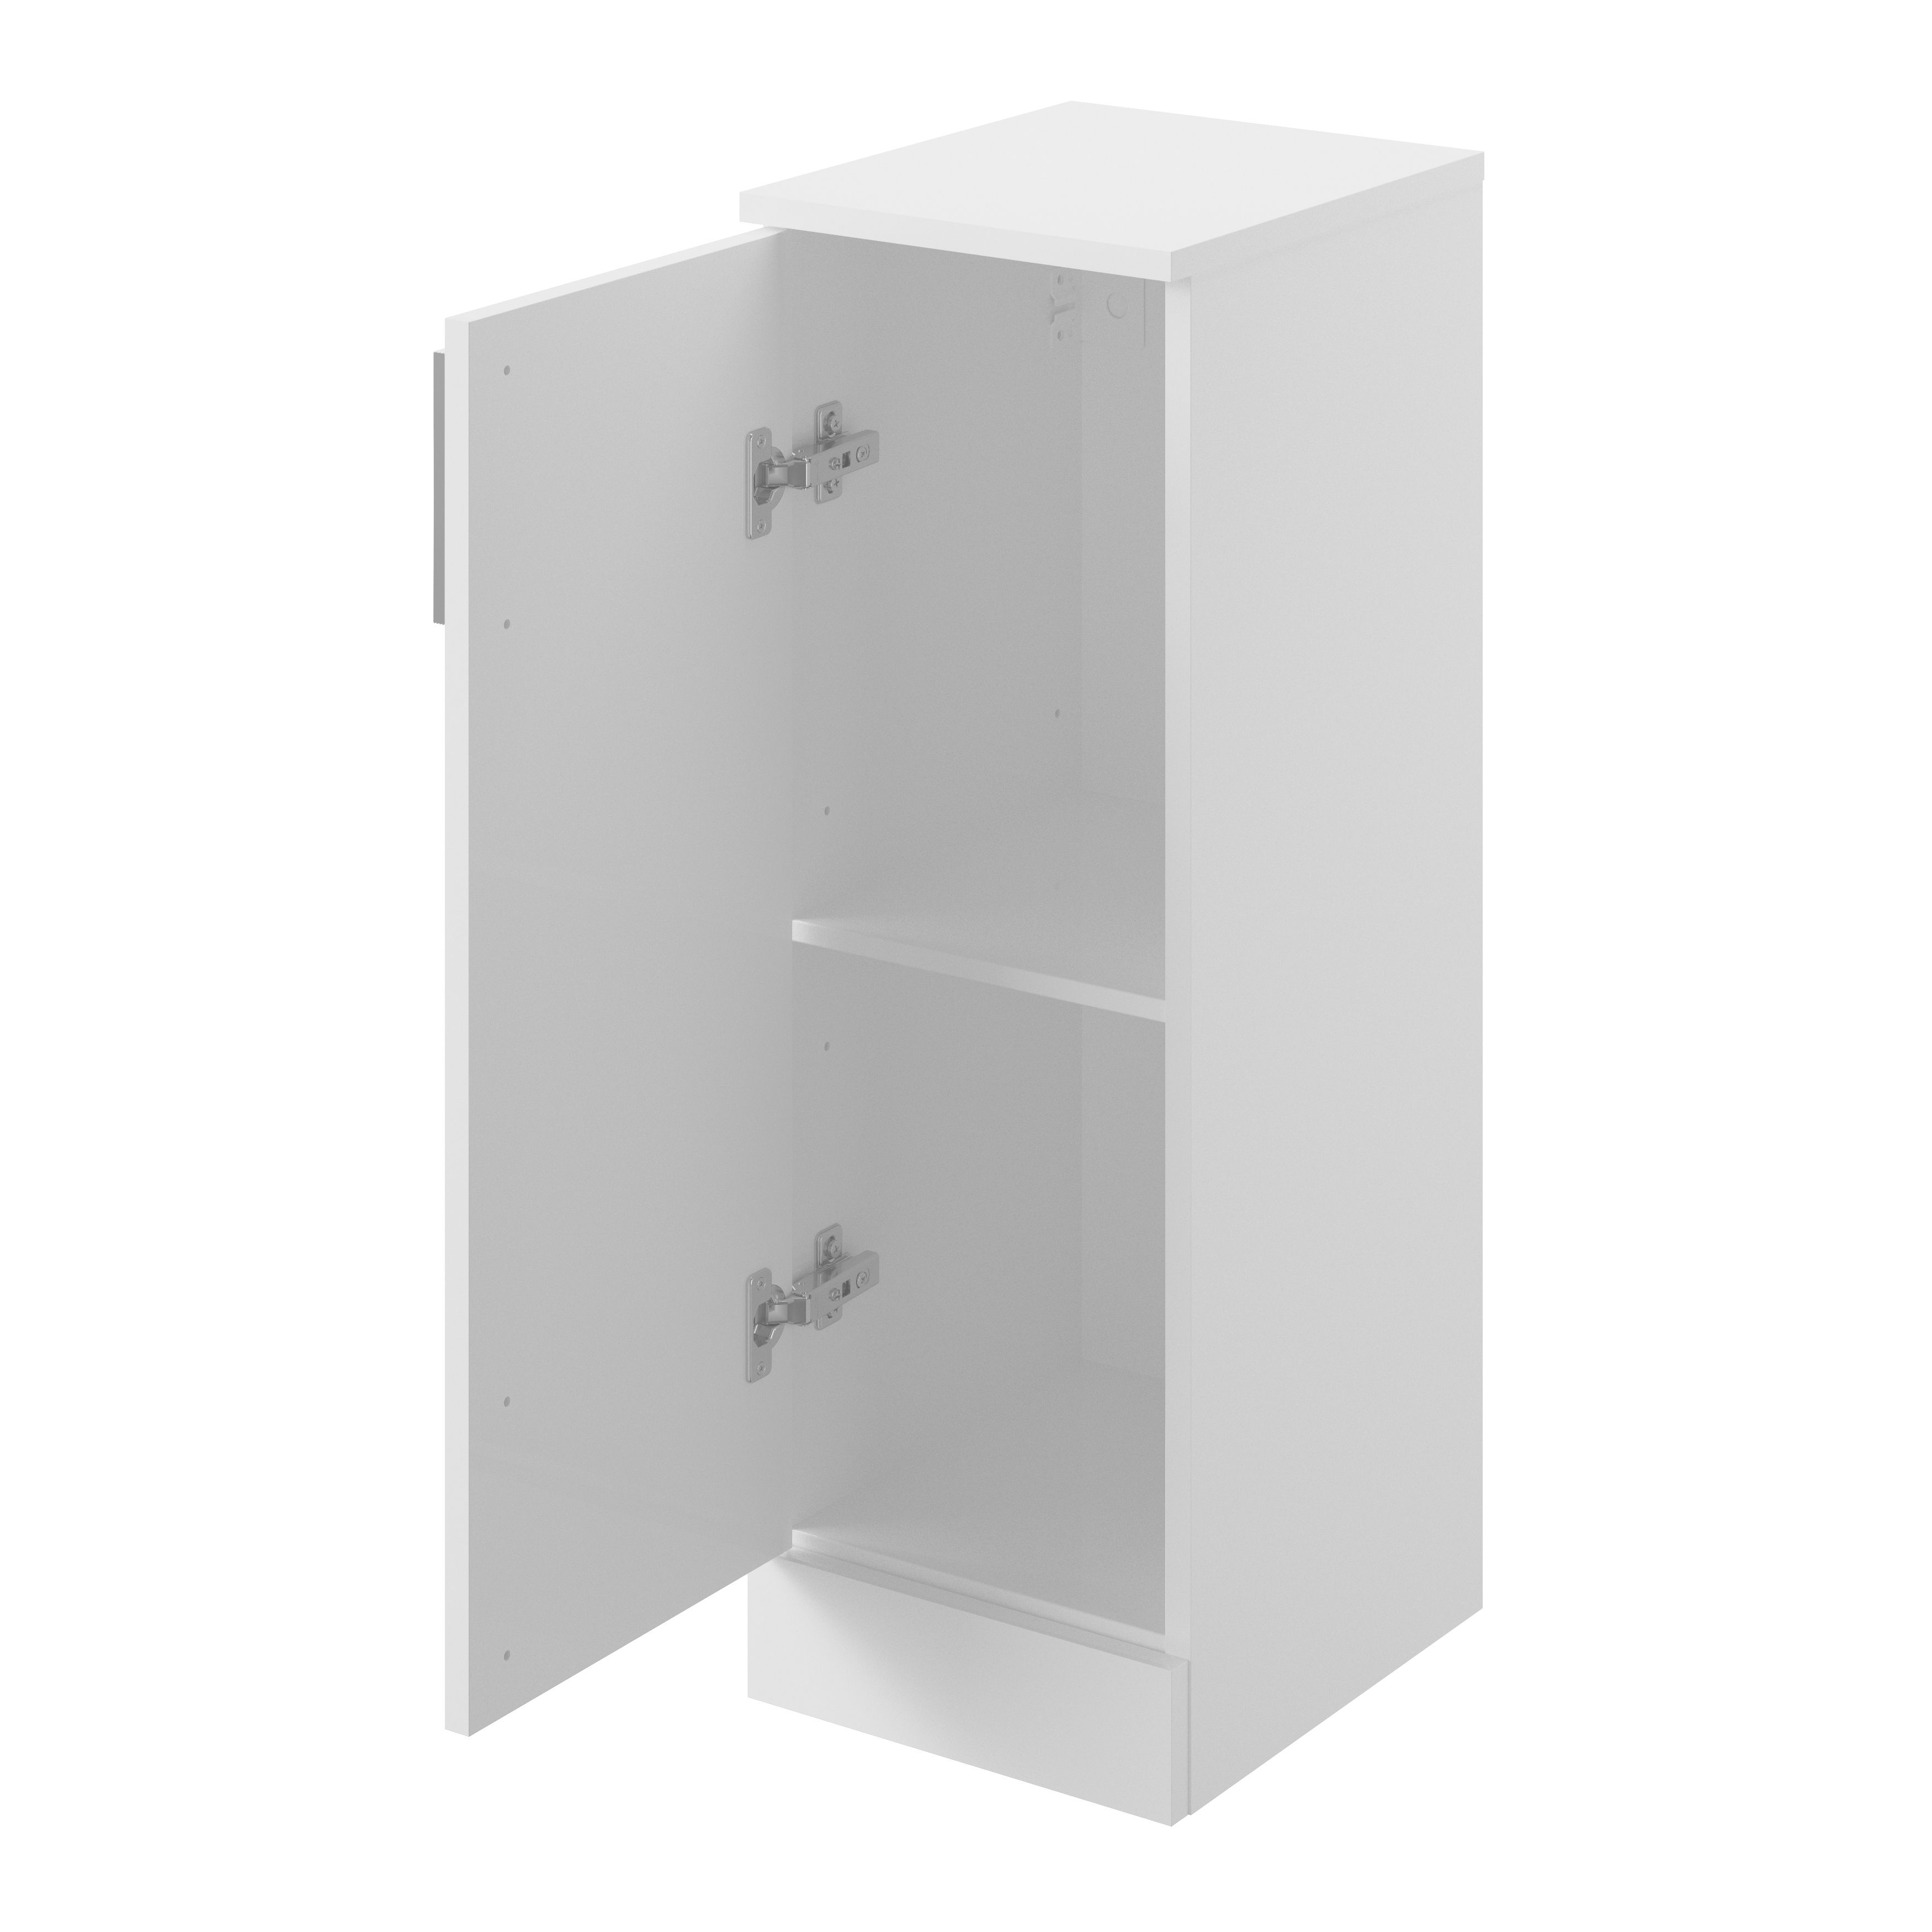 Veleka Gloss White Single Freestanding Bathroom Cabinet (H)81cm (W)27.5cm